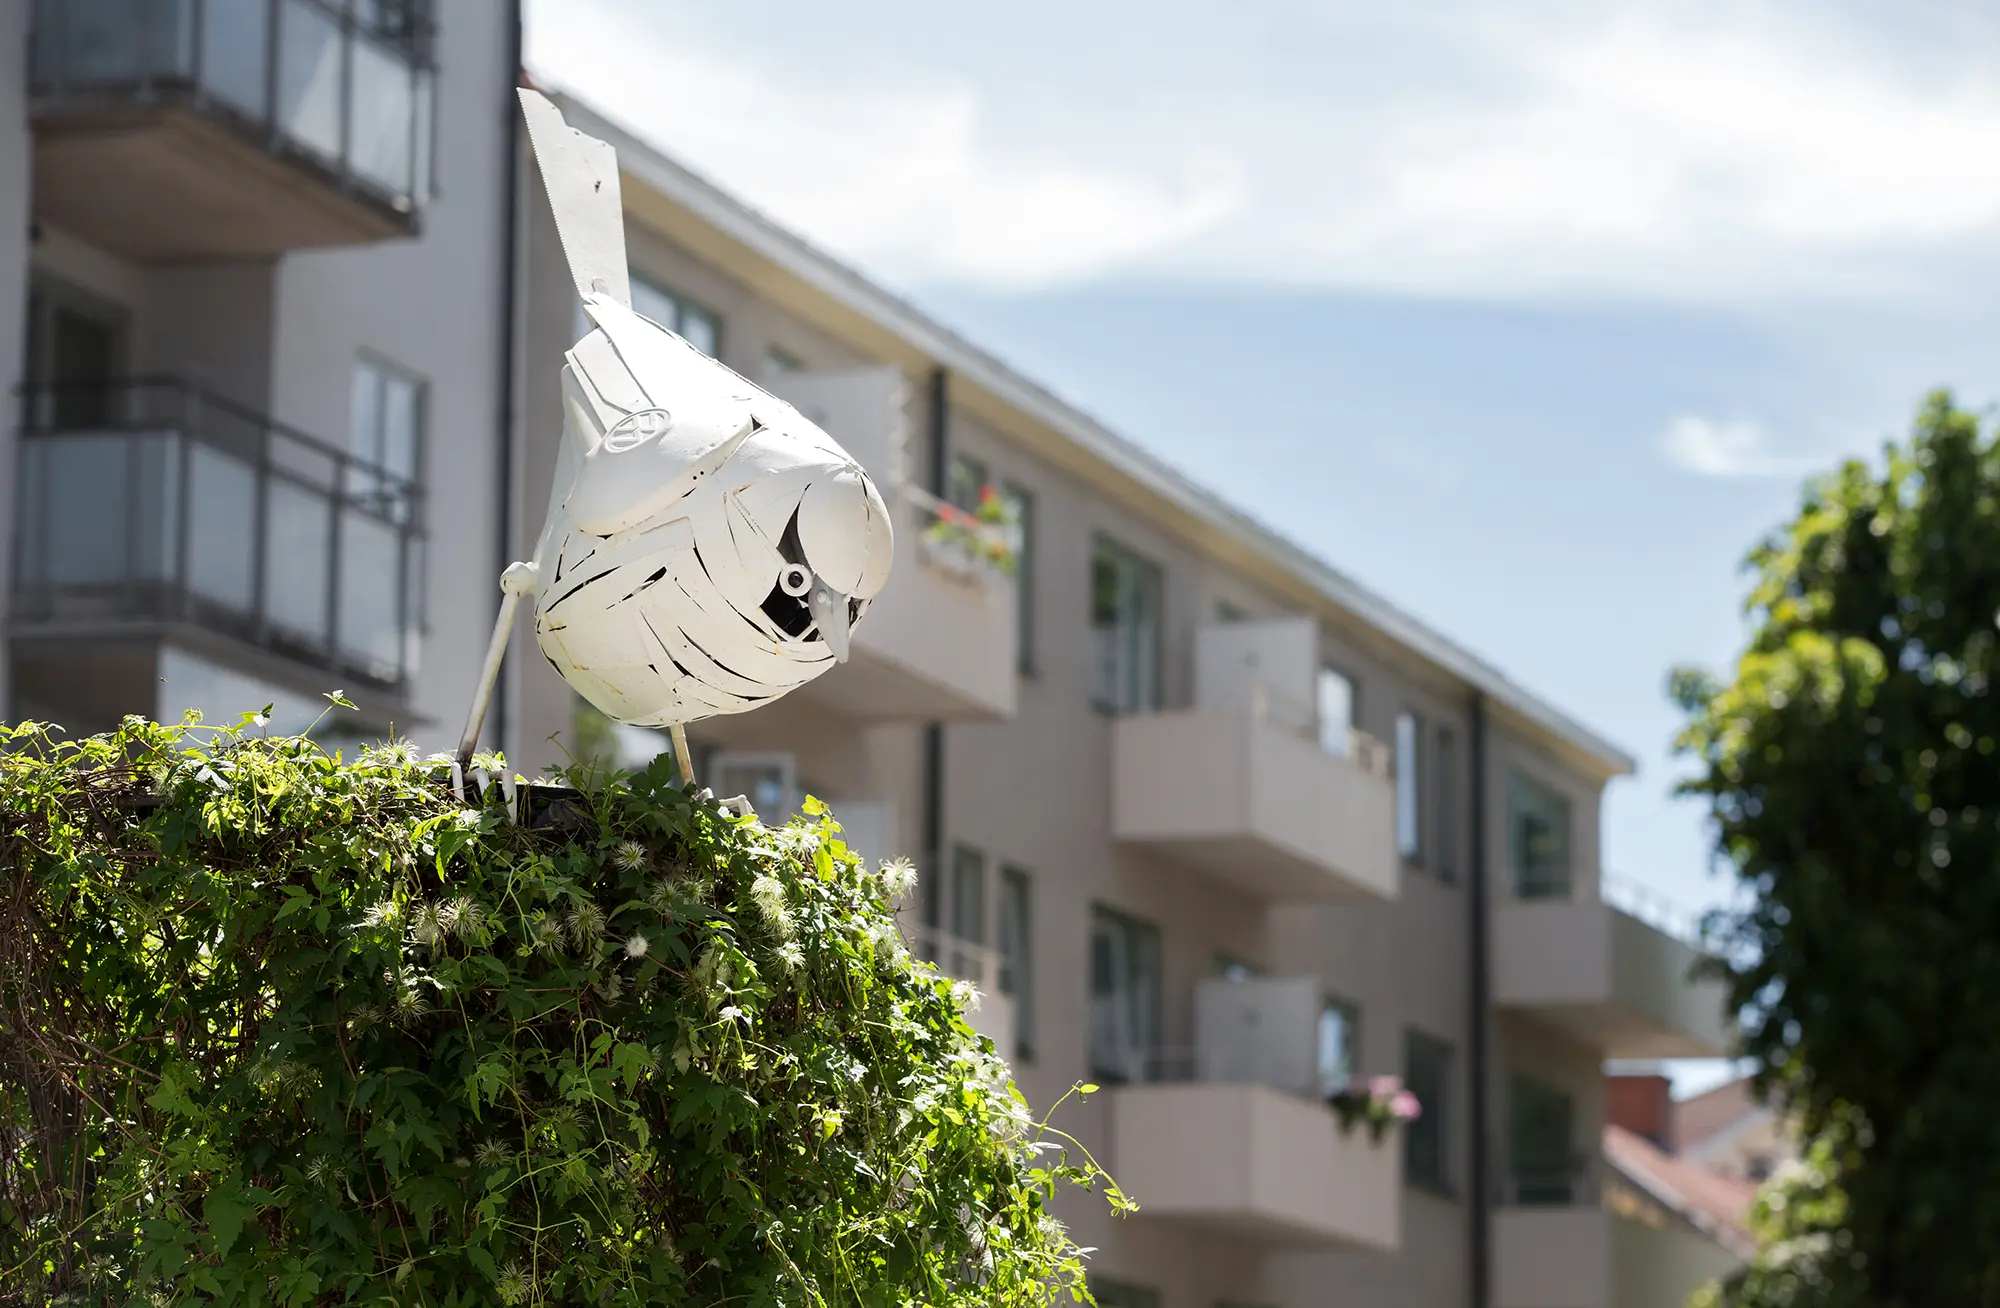 Uppe på en klätterväxt står en vit fågelskulptur i metall placerad. Den är uppbyggd av små böjda metallbitar som täcker skulpturens yta. Fågeln har blicken riktad neråt. I bakgrunden syns ett flervåningshus.